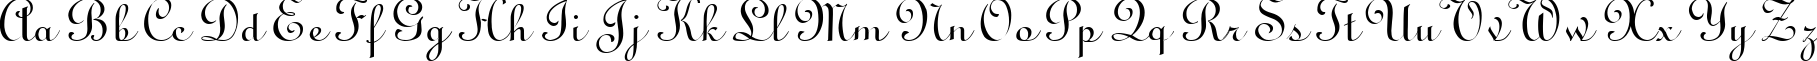 Пример написания английского алфавита шрифтом Linus